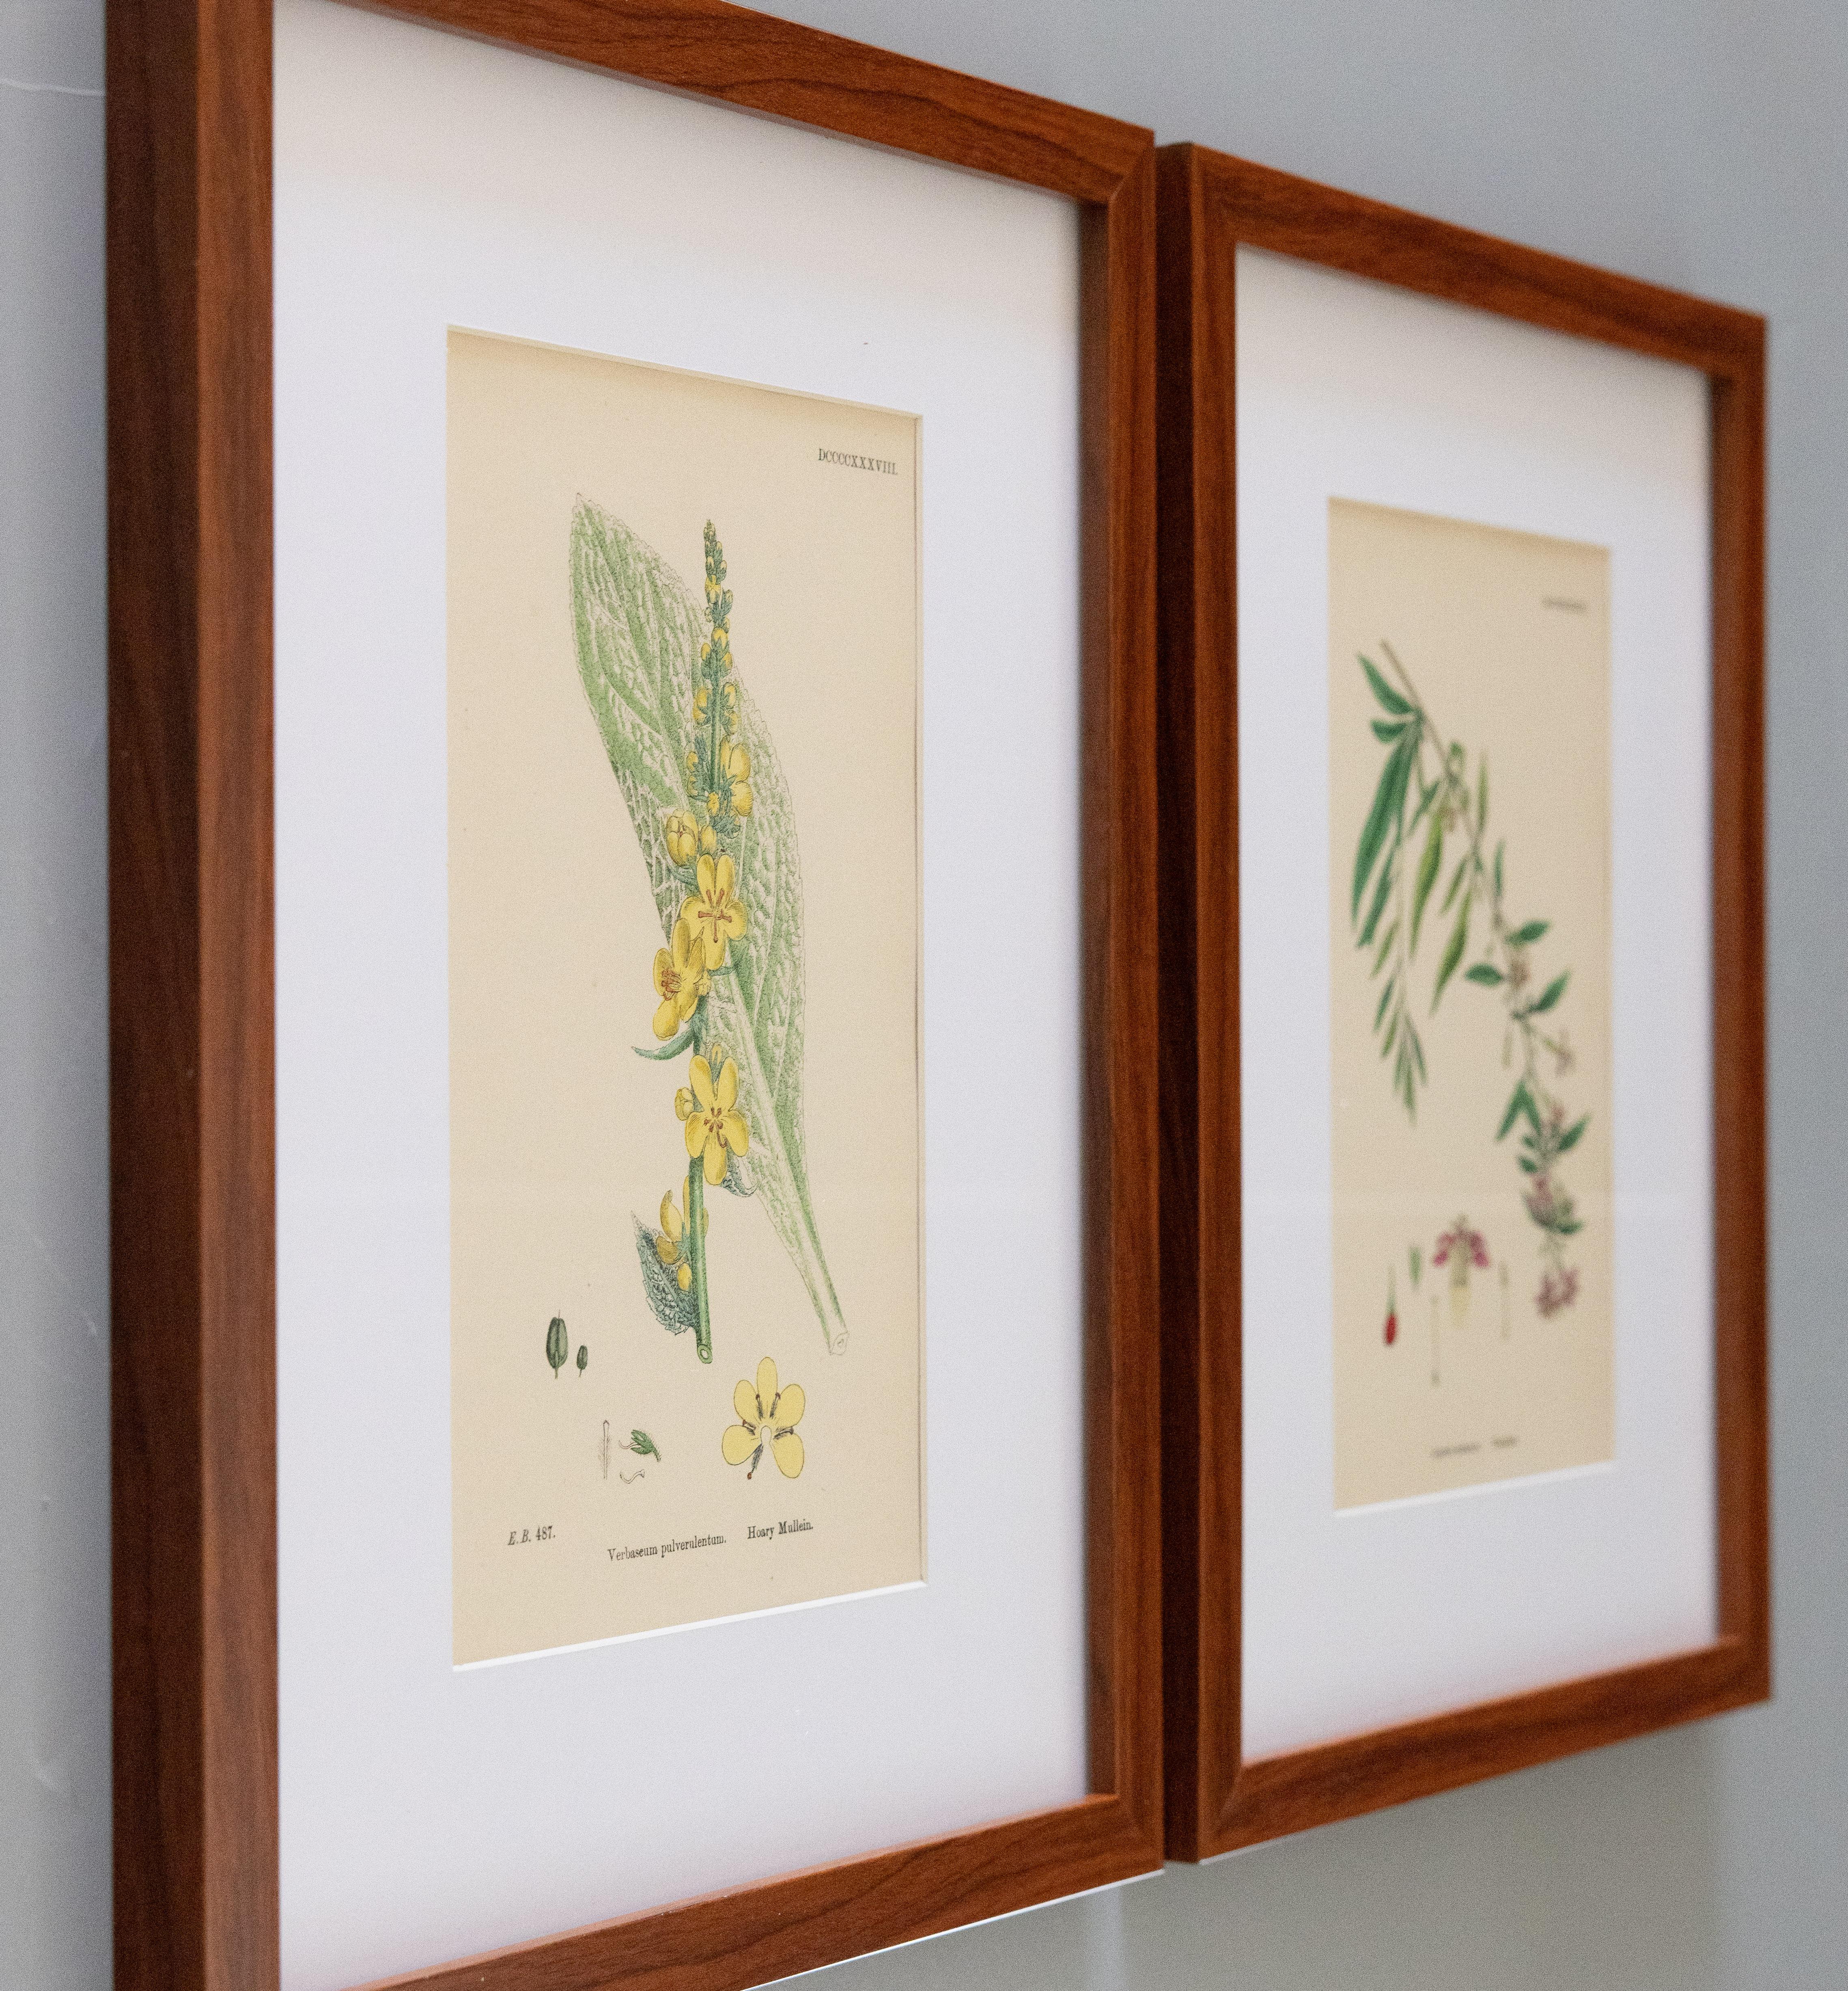 Custom framed 19th century botanical engravings from 